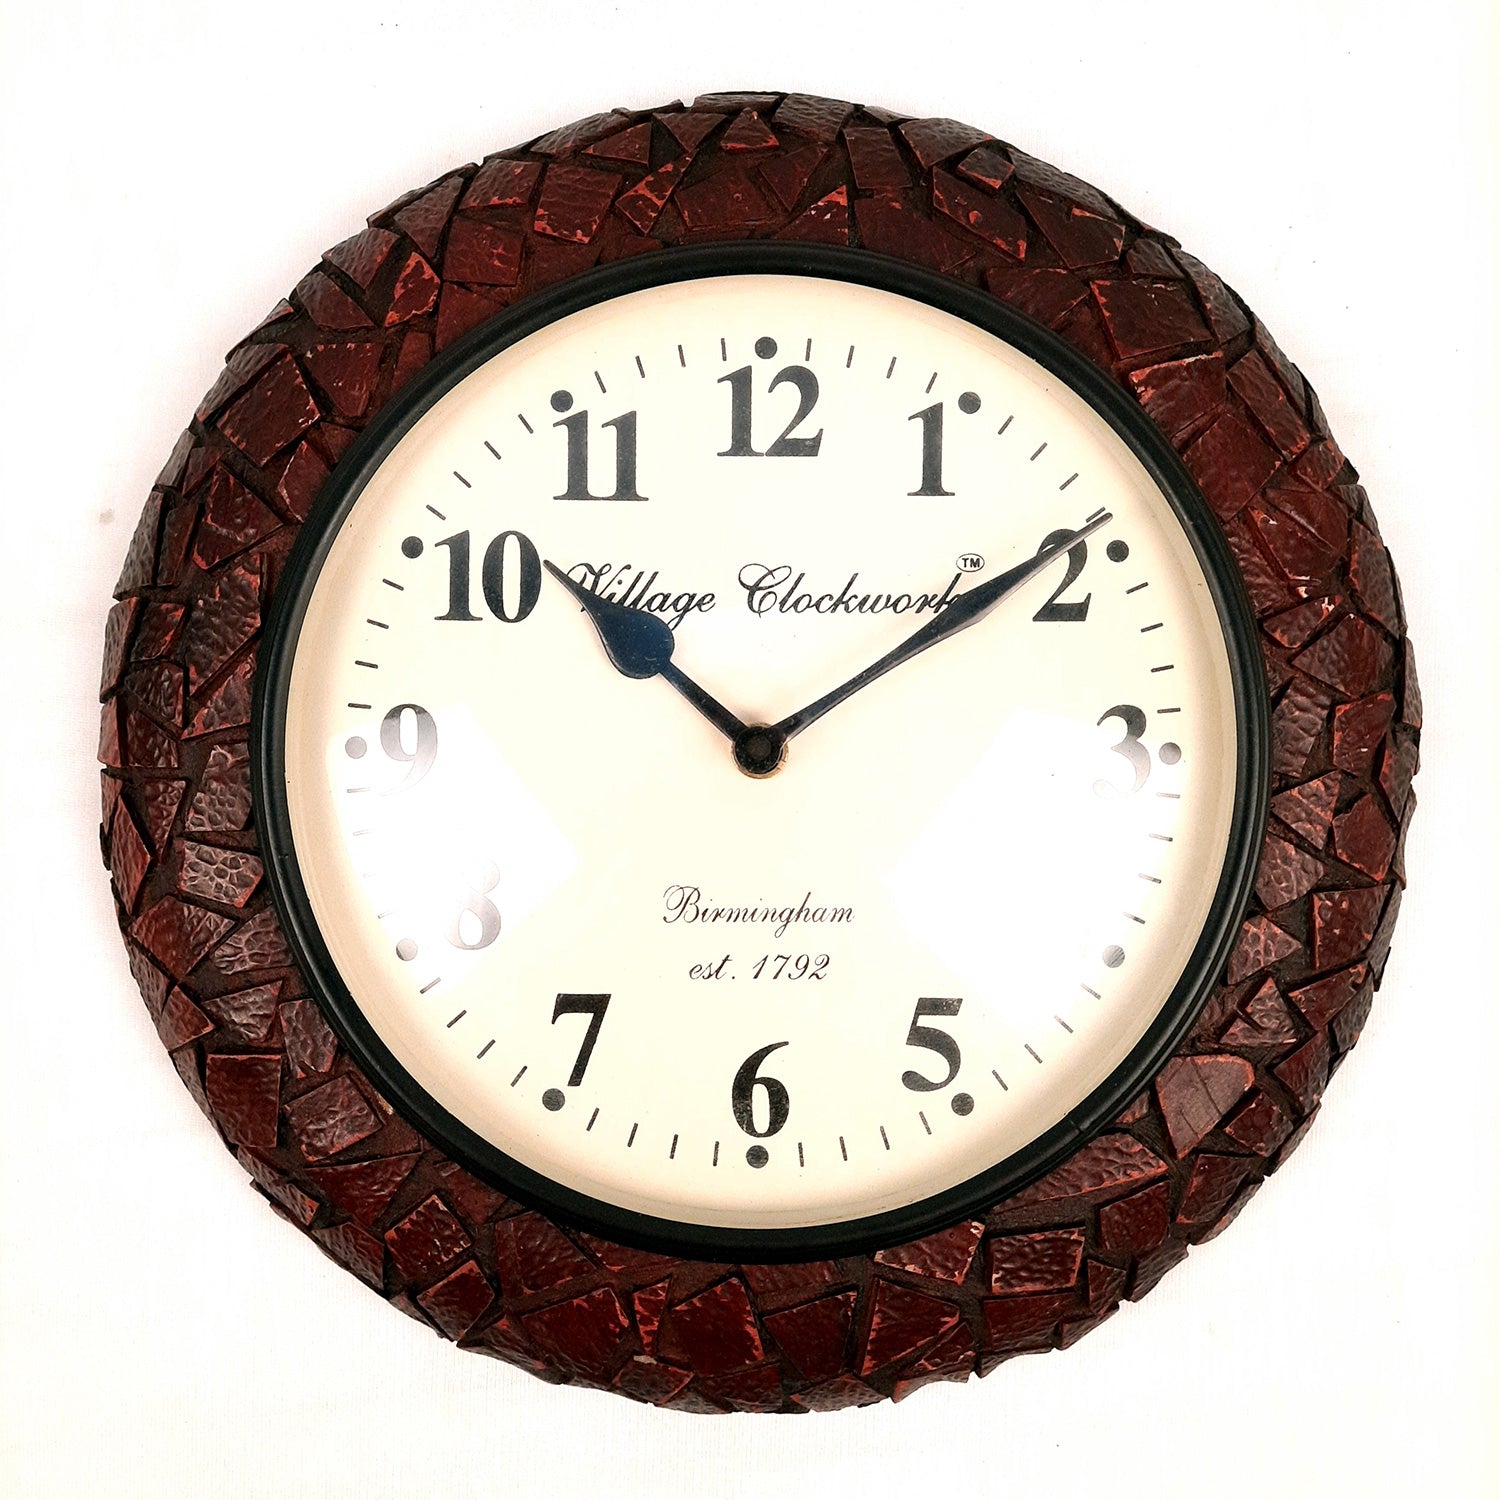 Send Love Maa Personalised Wall Clock Gift Online, Rs.490 | FlowerAura